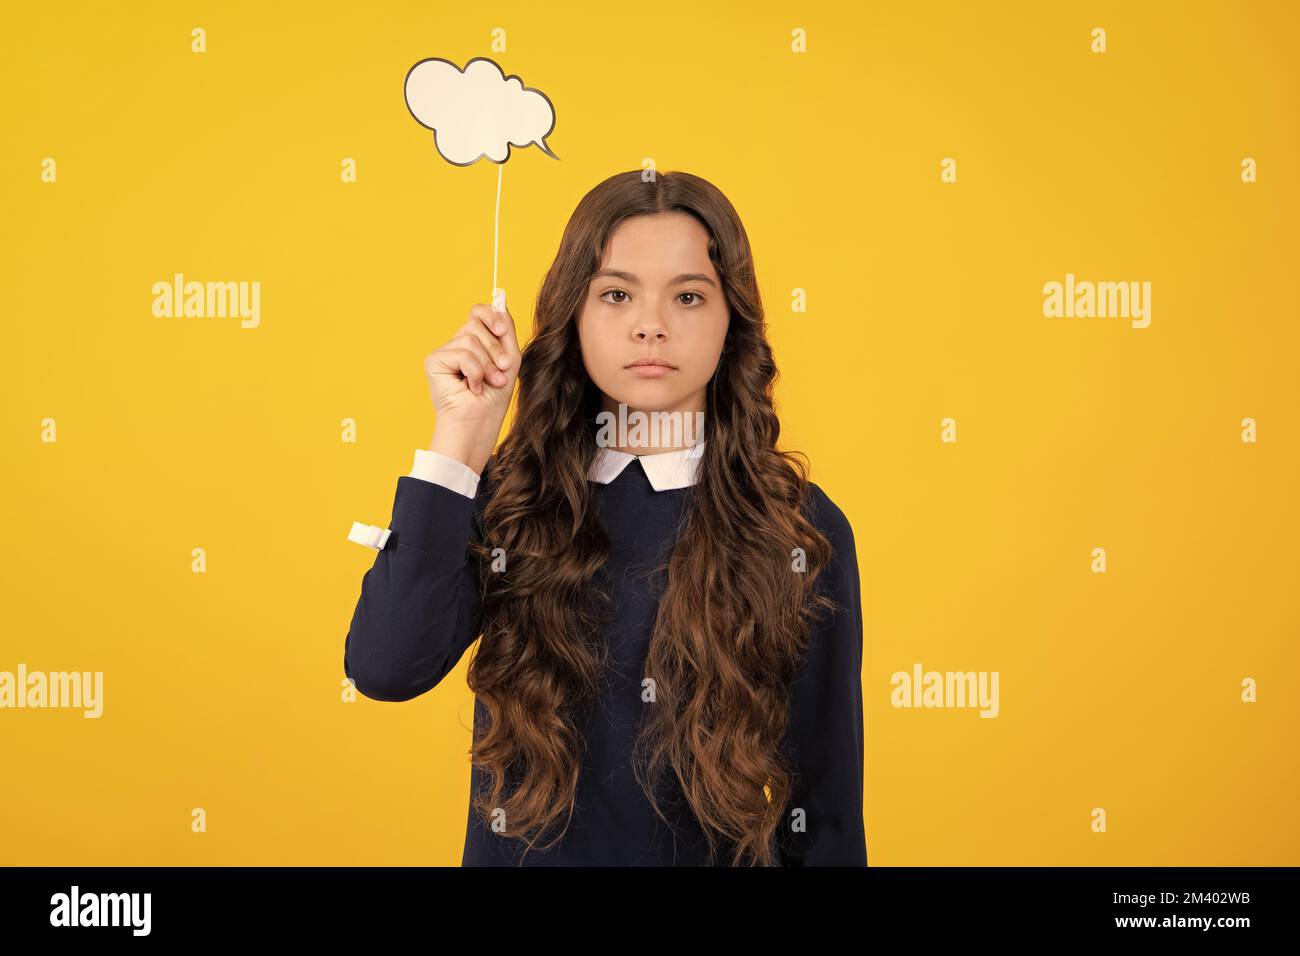 Portrait von konzentrierten Teenager Mädchen haben Schulprobleme Probleme Gedanken entscheiden wählen lösen Look Hold Hand wollen Erfolg isoliert auf gelb Stockfoto